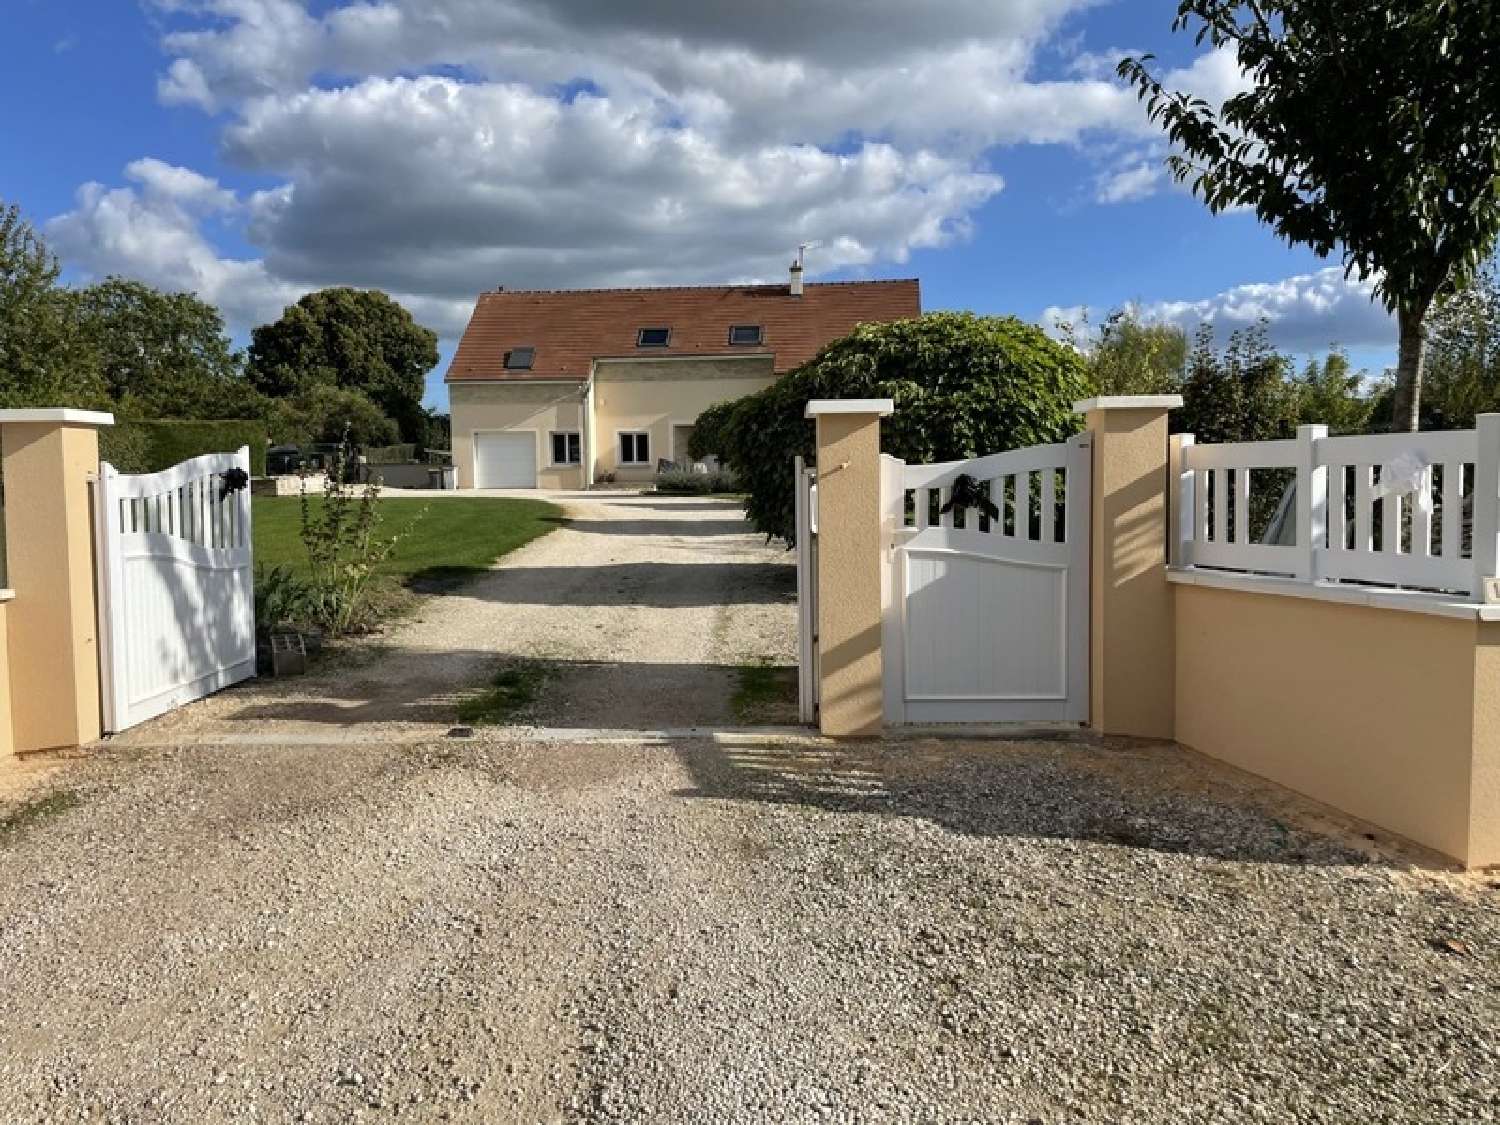  for sale village house Semur-en-Auxois Côte-d'Or 1